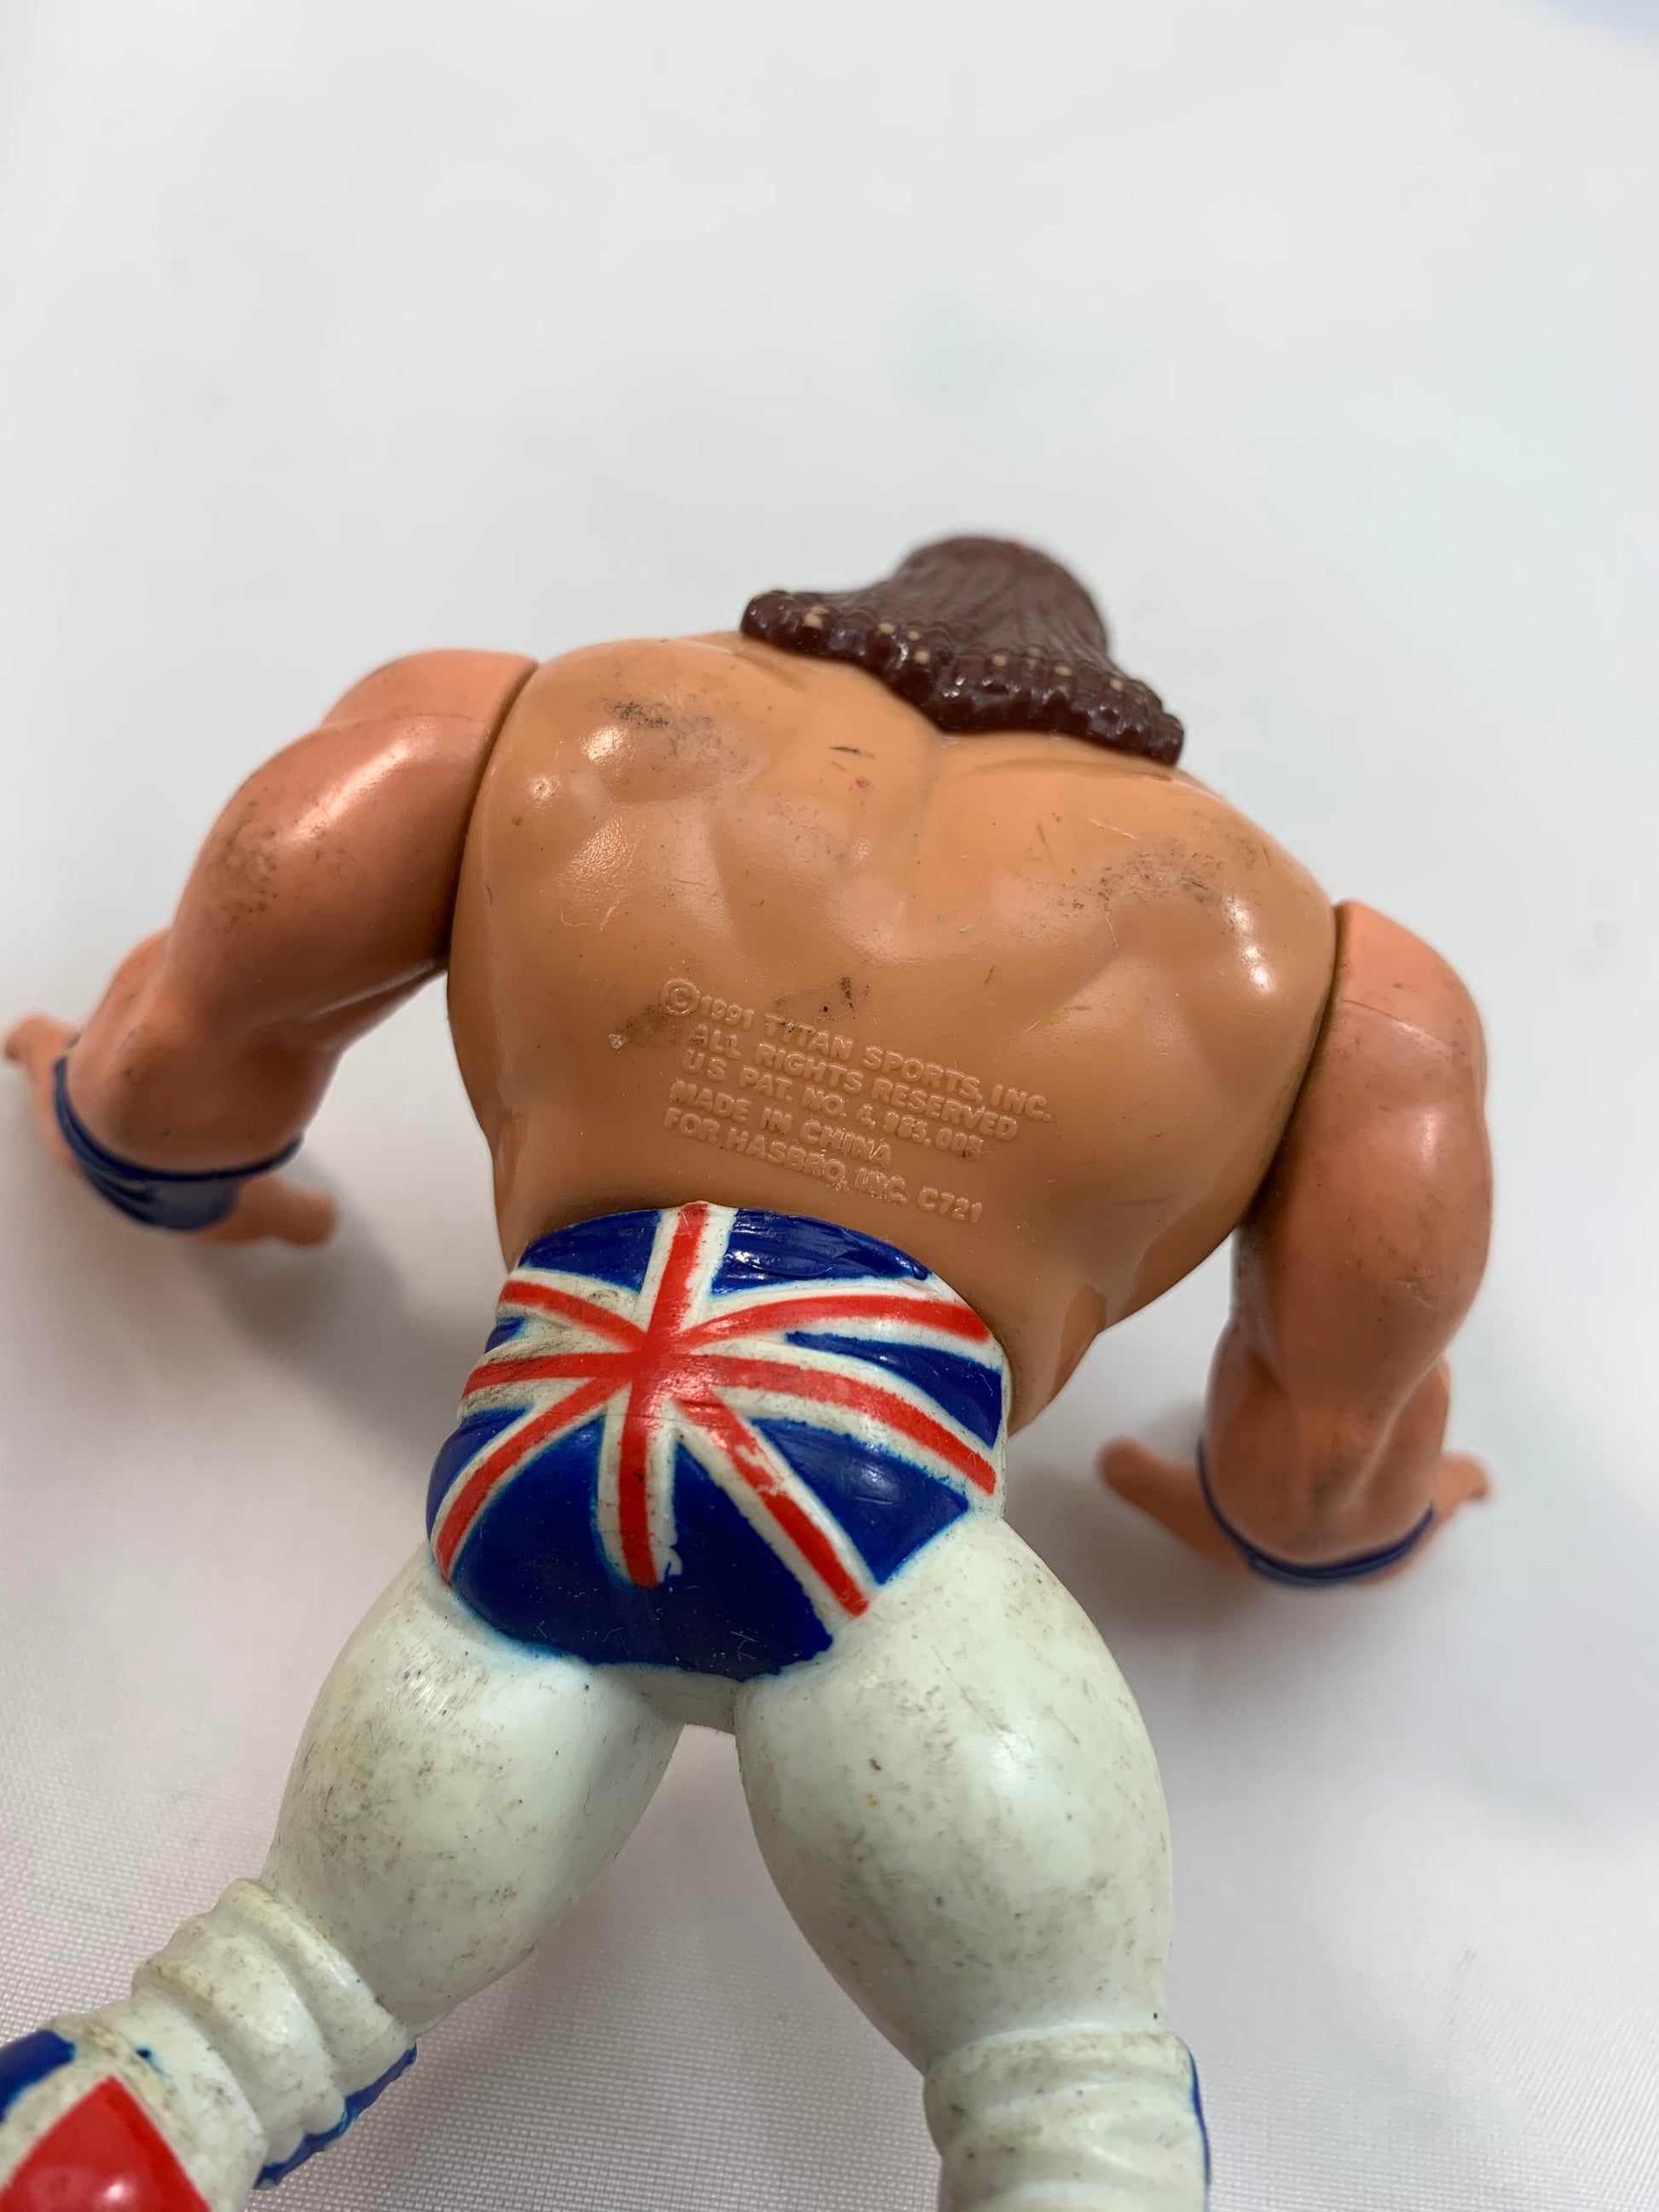 Hasbro WWF British Bulldog Figure 1991 - Loose